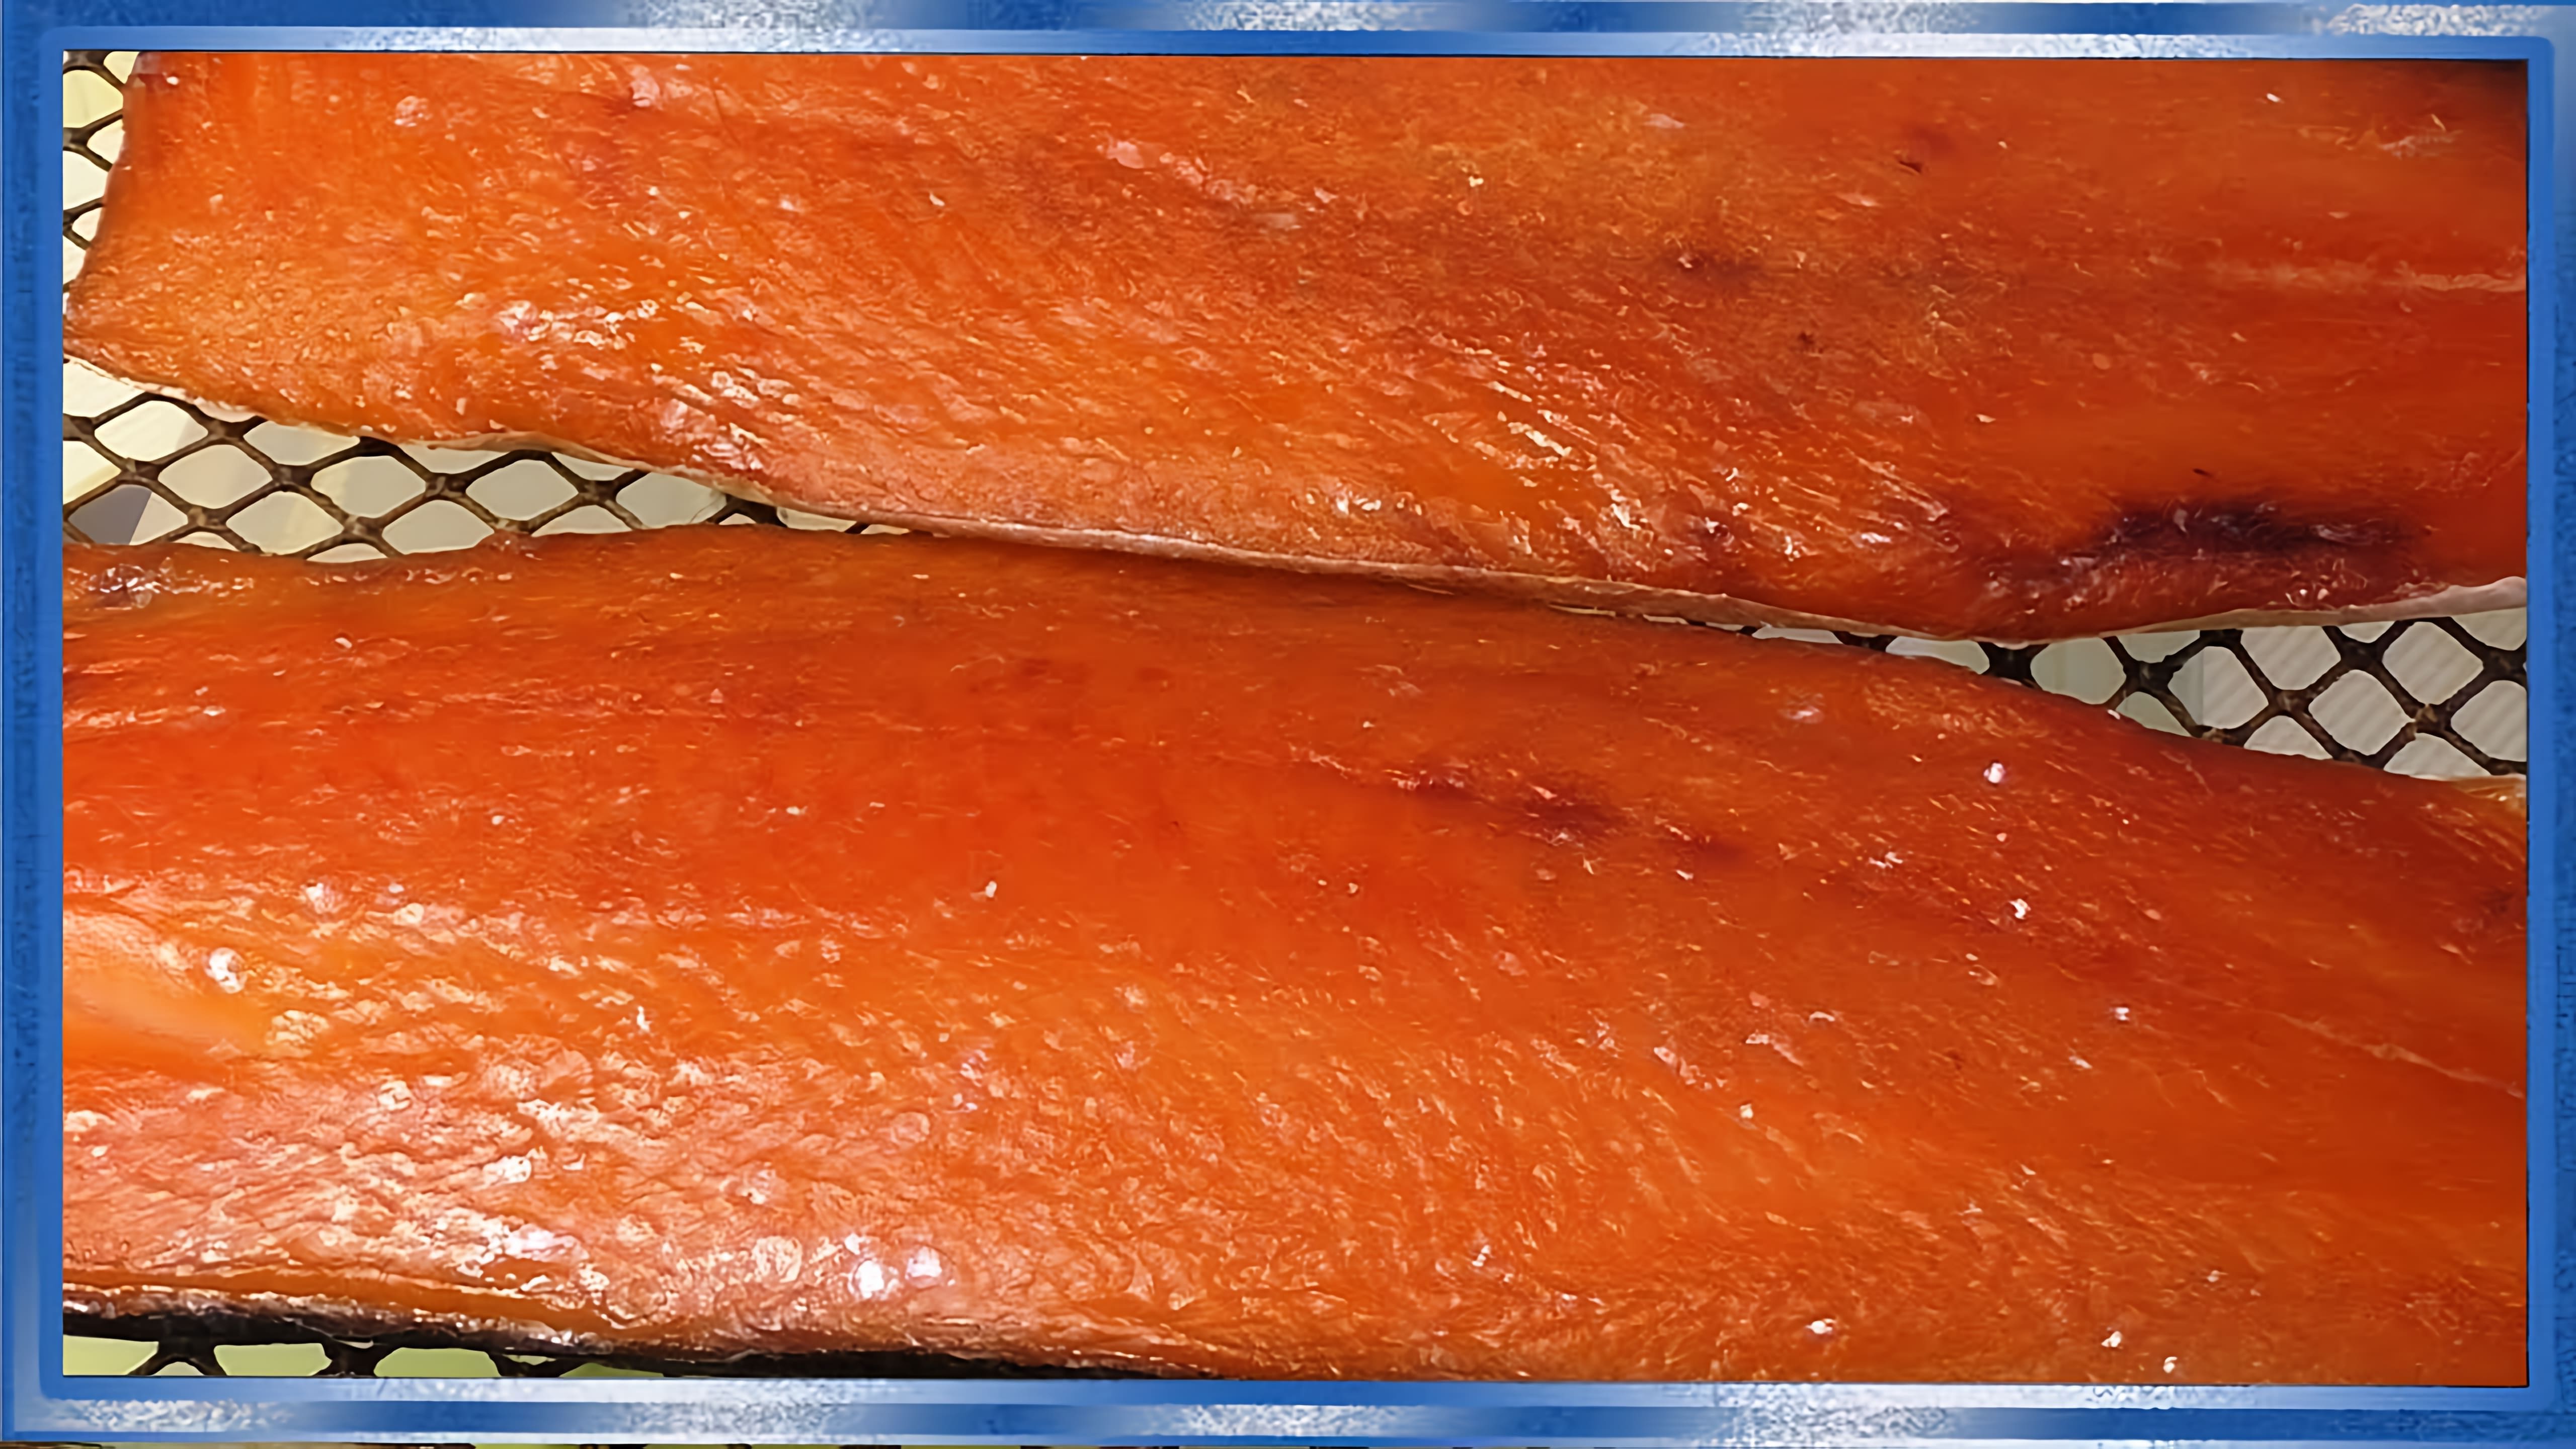 Видео как приготовить посоленную красную рыбу, используя симу или кету в качестве основного ингредиента